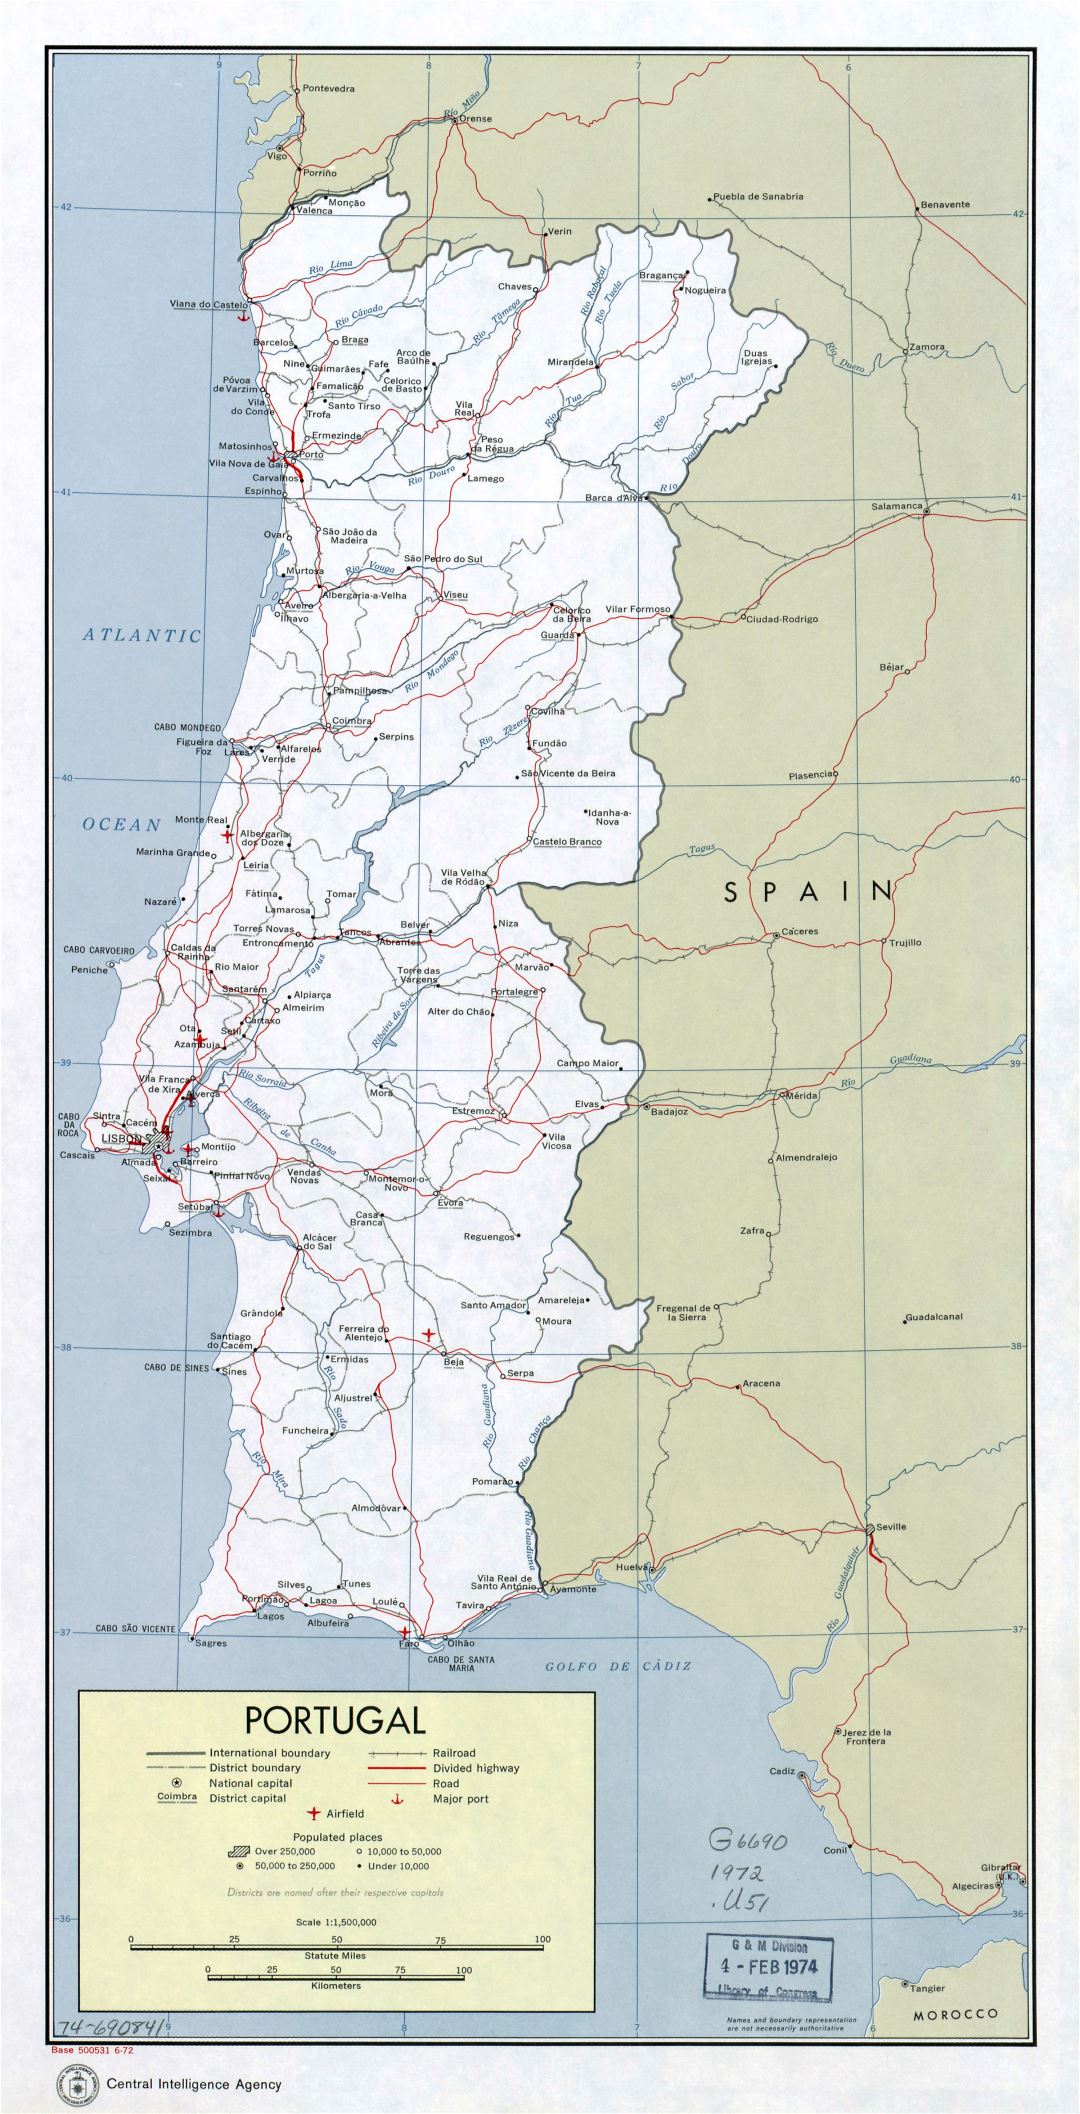 Grande detallado mapa política y administrativa de Portugal con carreteras, ferrocarriles, principales ciudades, aeropuertos y puertos marítimos - 1972